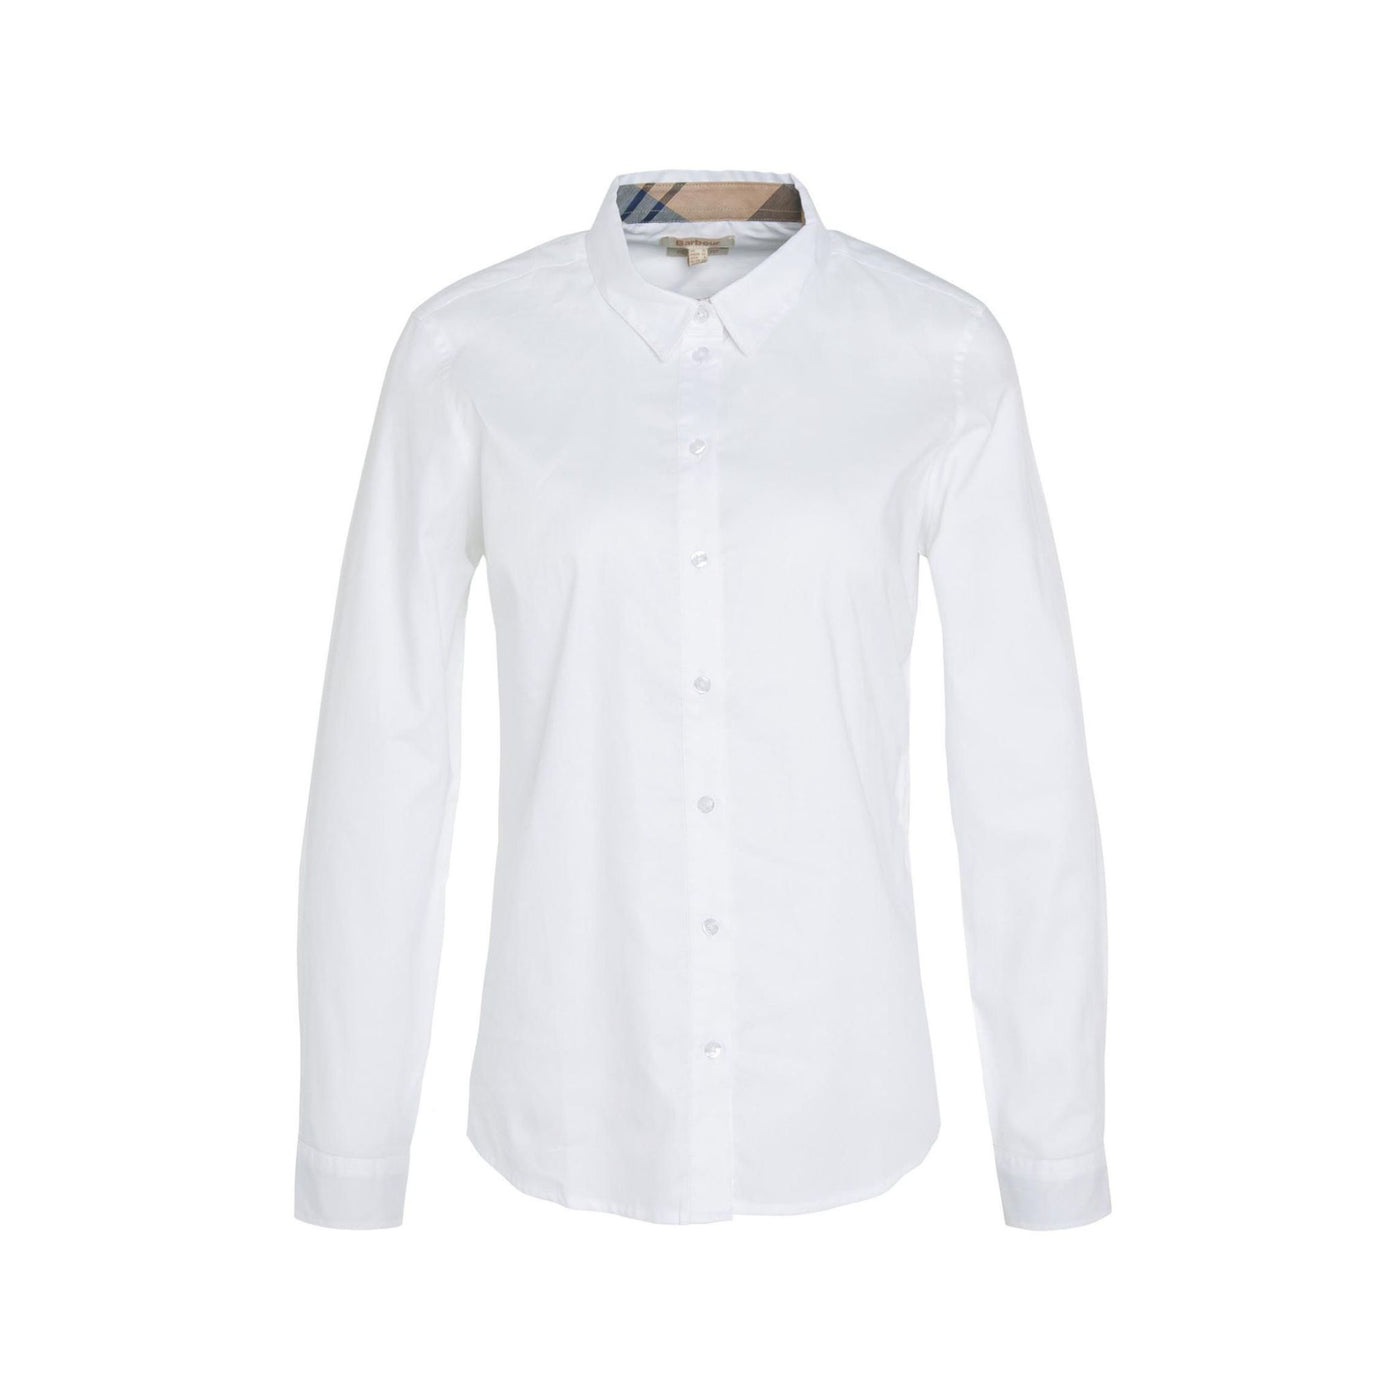 Camicia Donna modello Derwent Bianco